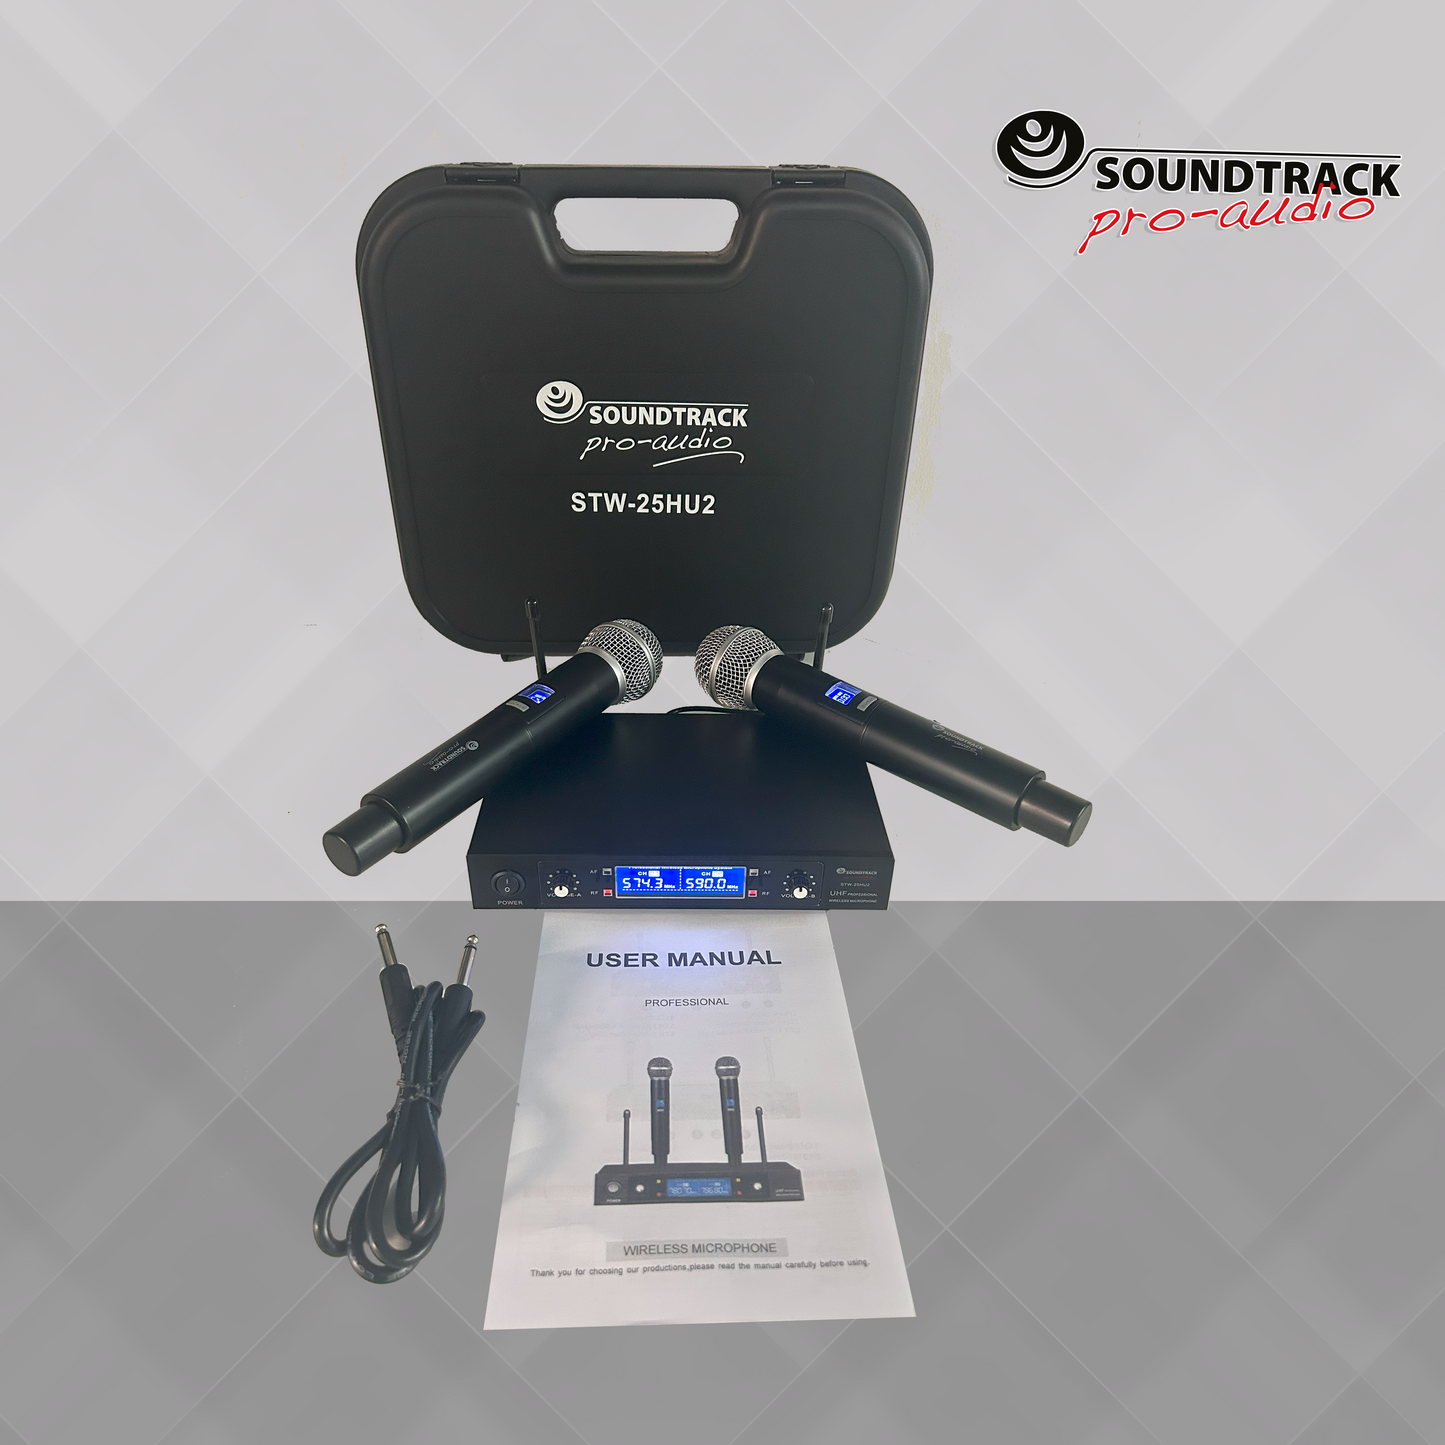 Soundtrack UHF Wireless Microphone STW-25HU2